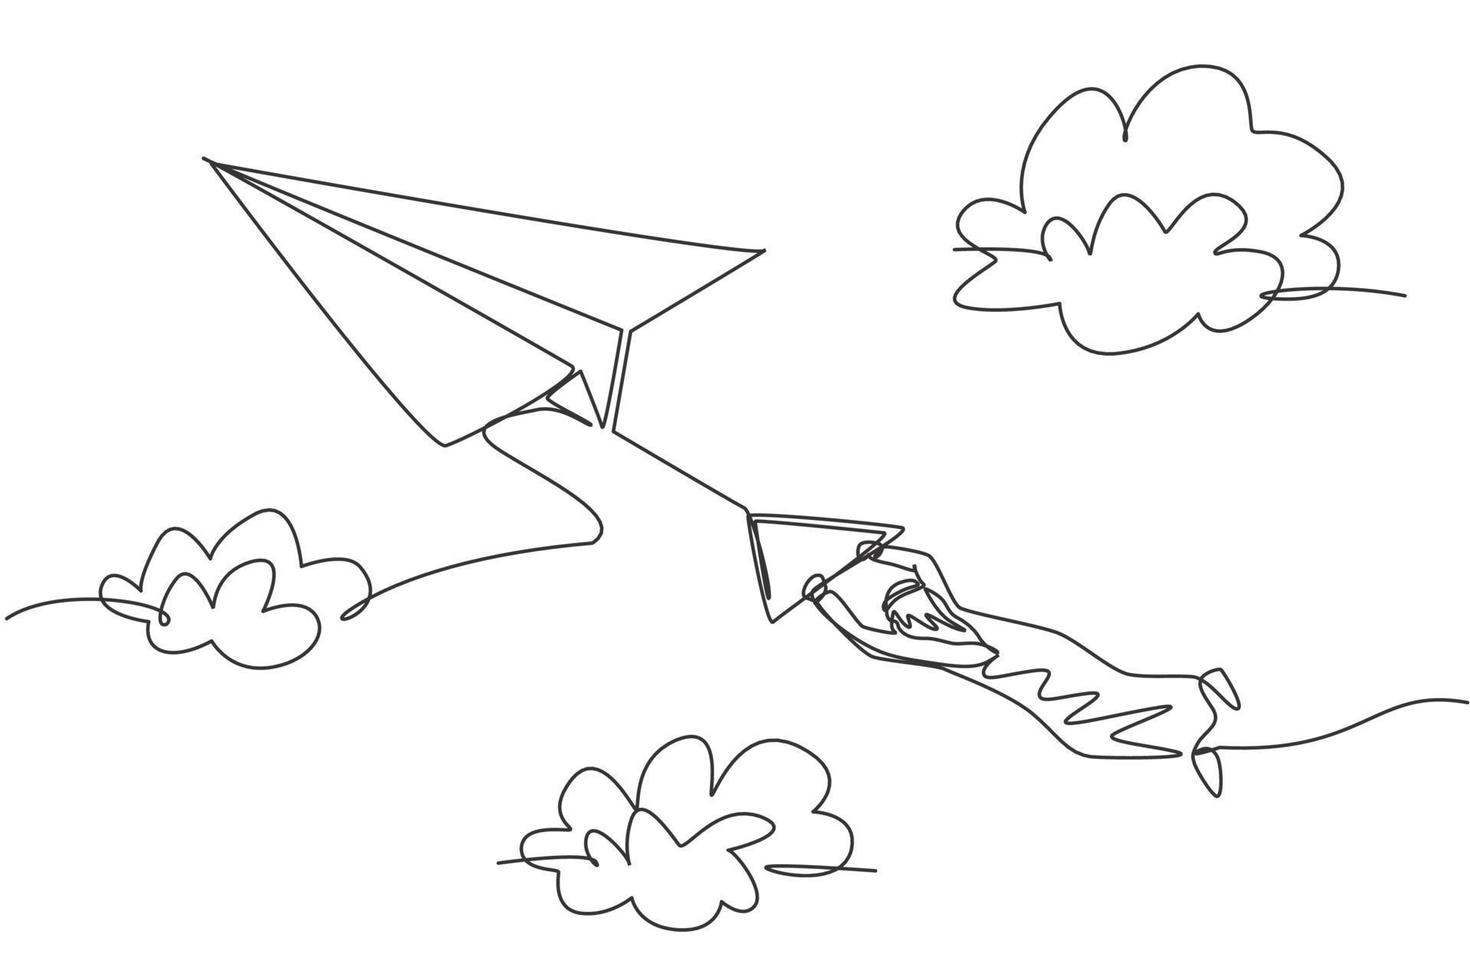 kontinuerlig en radritning av ung arabisk manlig arbetare som hänger tätt på flygande pappersplan vid himlen. affärsutmaning minimalistisk metafor koncept. enkel linje rita design vektor grafisk illustration